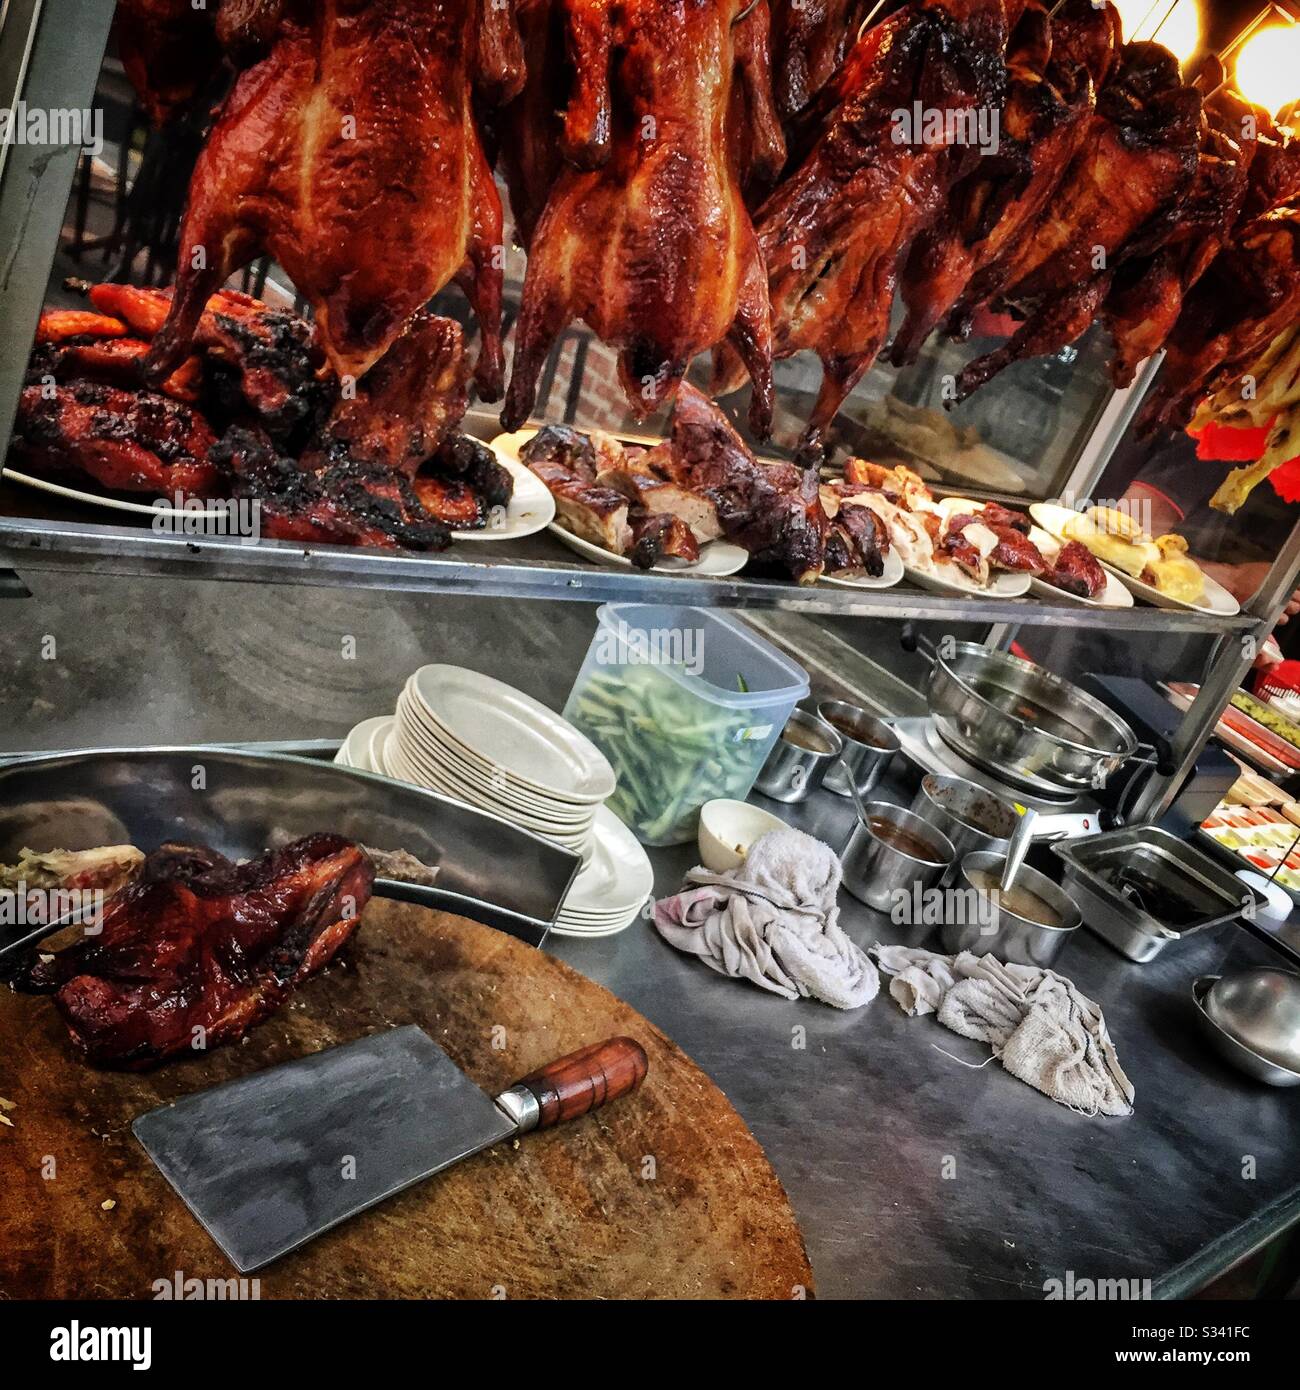 Una stalla alimentare vende pollo arrosto in stile siu mei e oca, Kuala Lumpur, Malesia Foto Stock